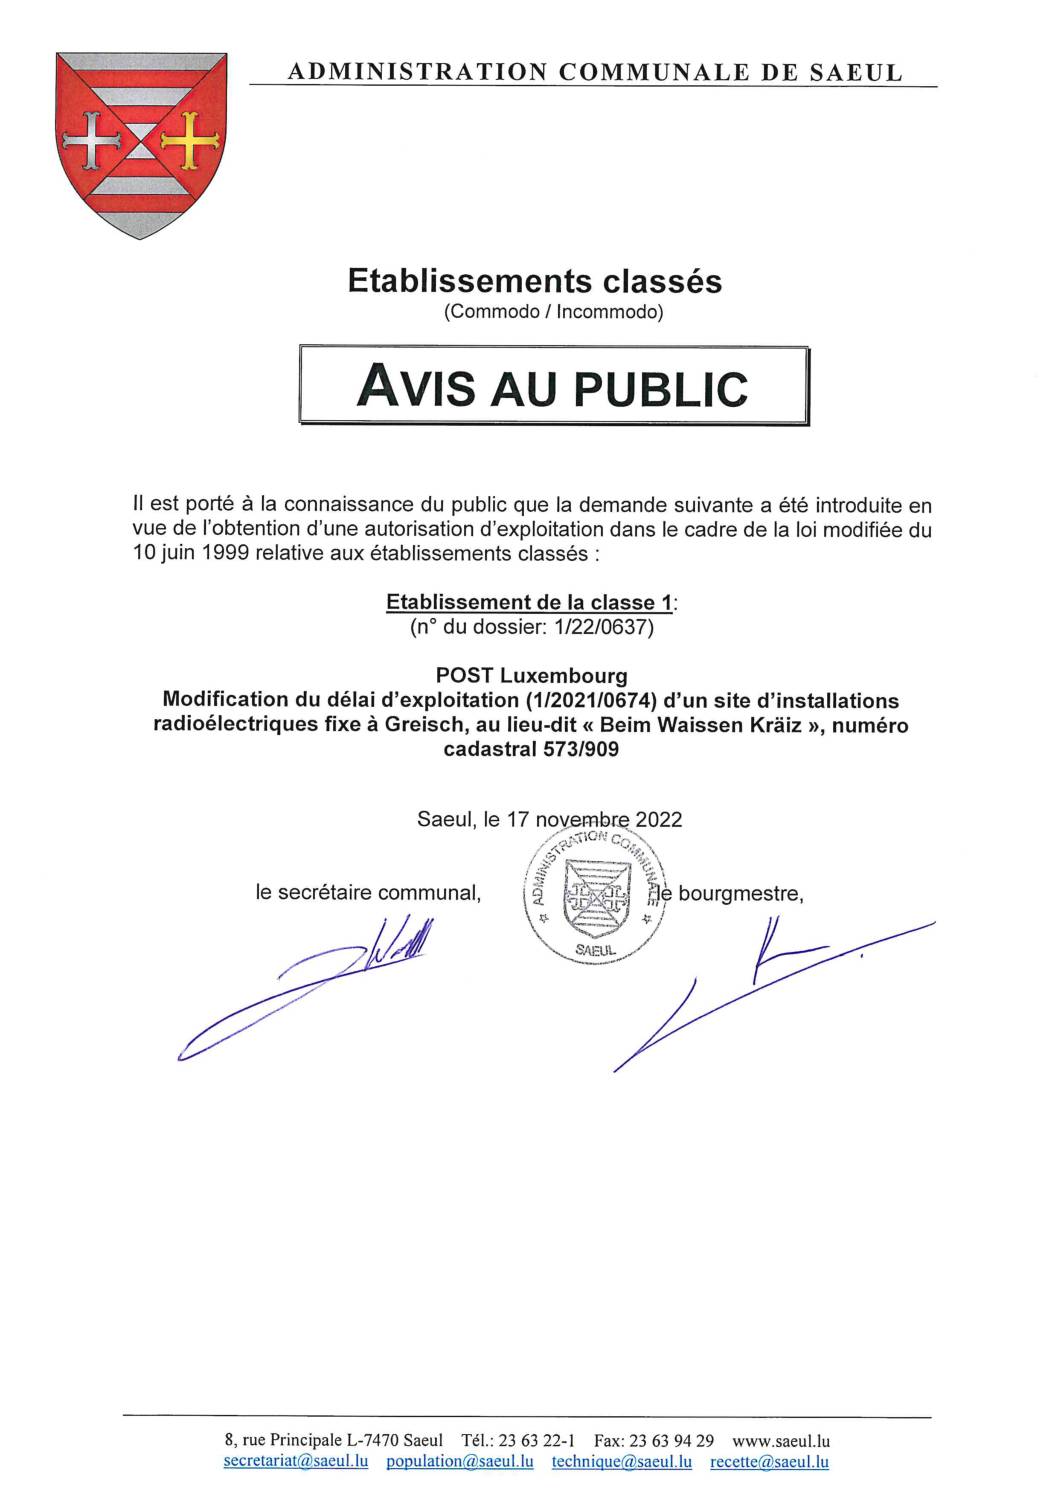 Avis au public – Etablissements classés – introduction d'une demande Post Luxembourg (n° 1/22/0637)